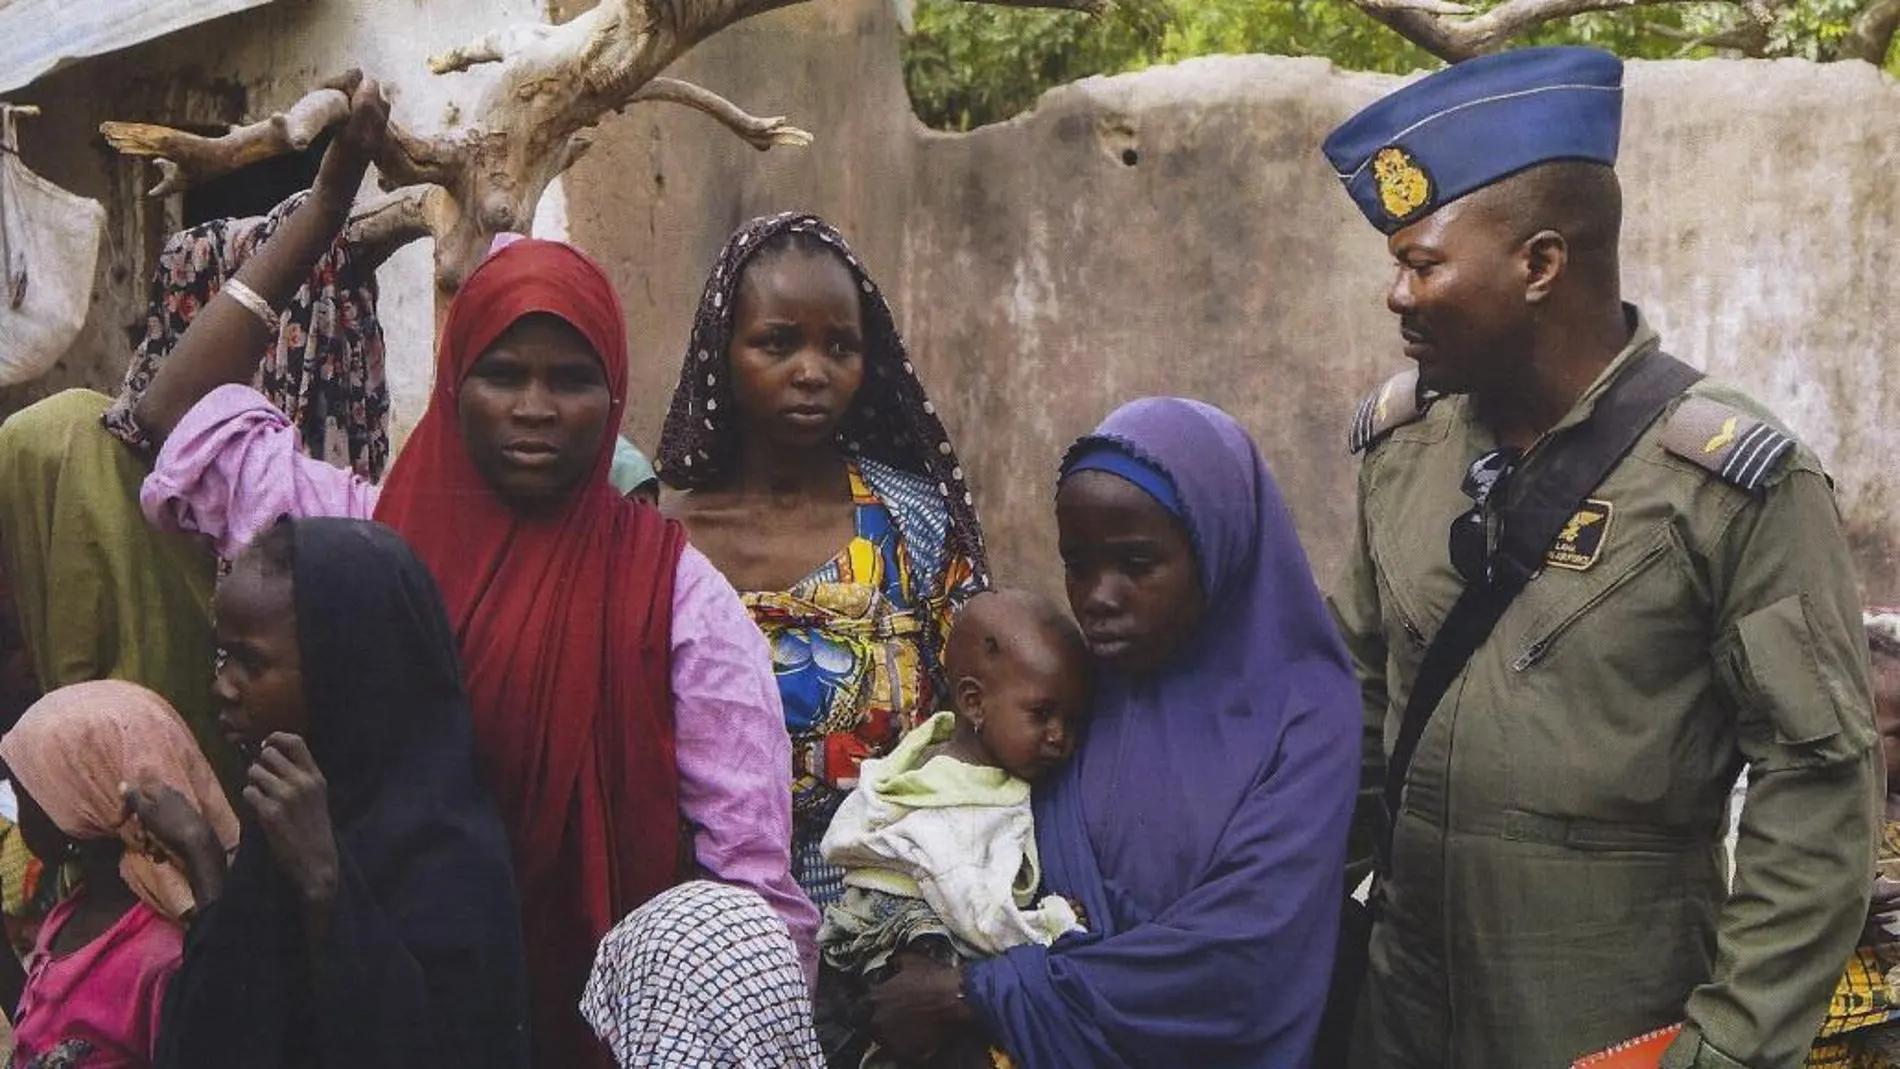 Fotografía facilitada por el Ejército de Nigeria que muestra a un soldado rodeado de un grupo de mujeres y niños rescatados por el Ejército durante una operación contra el grupo yihadista Boko Haram.